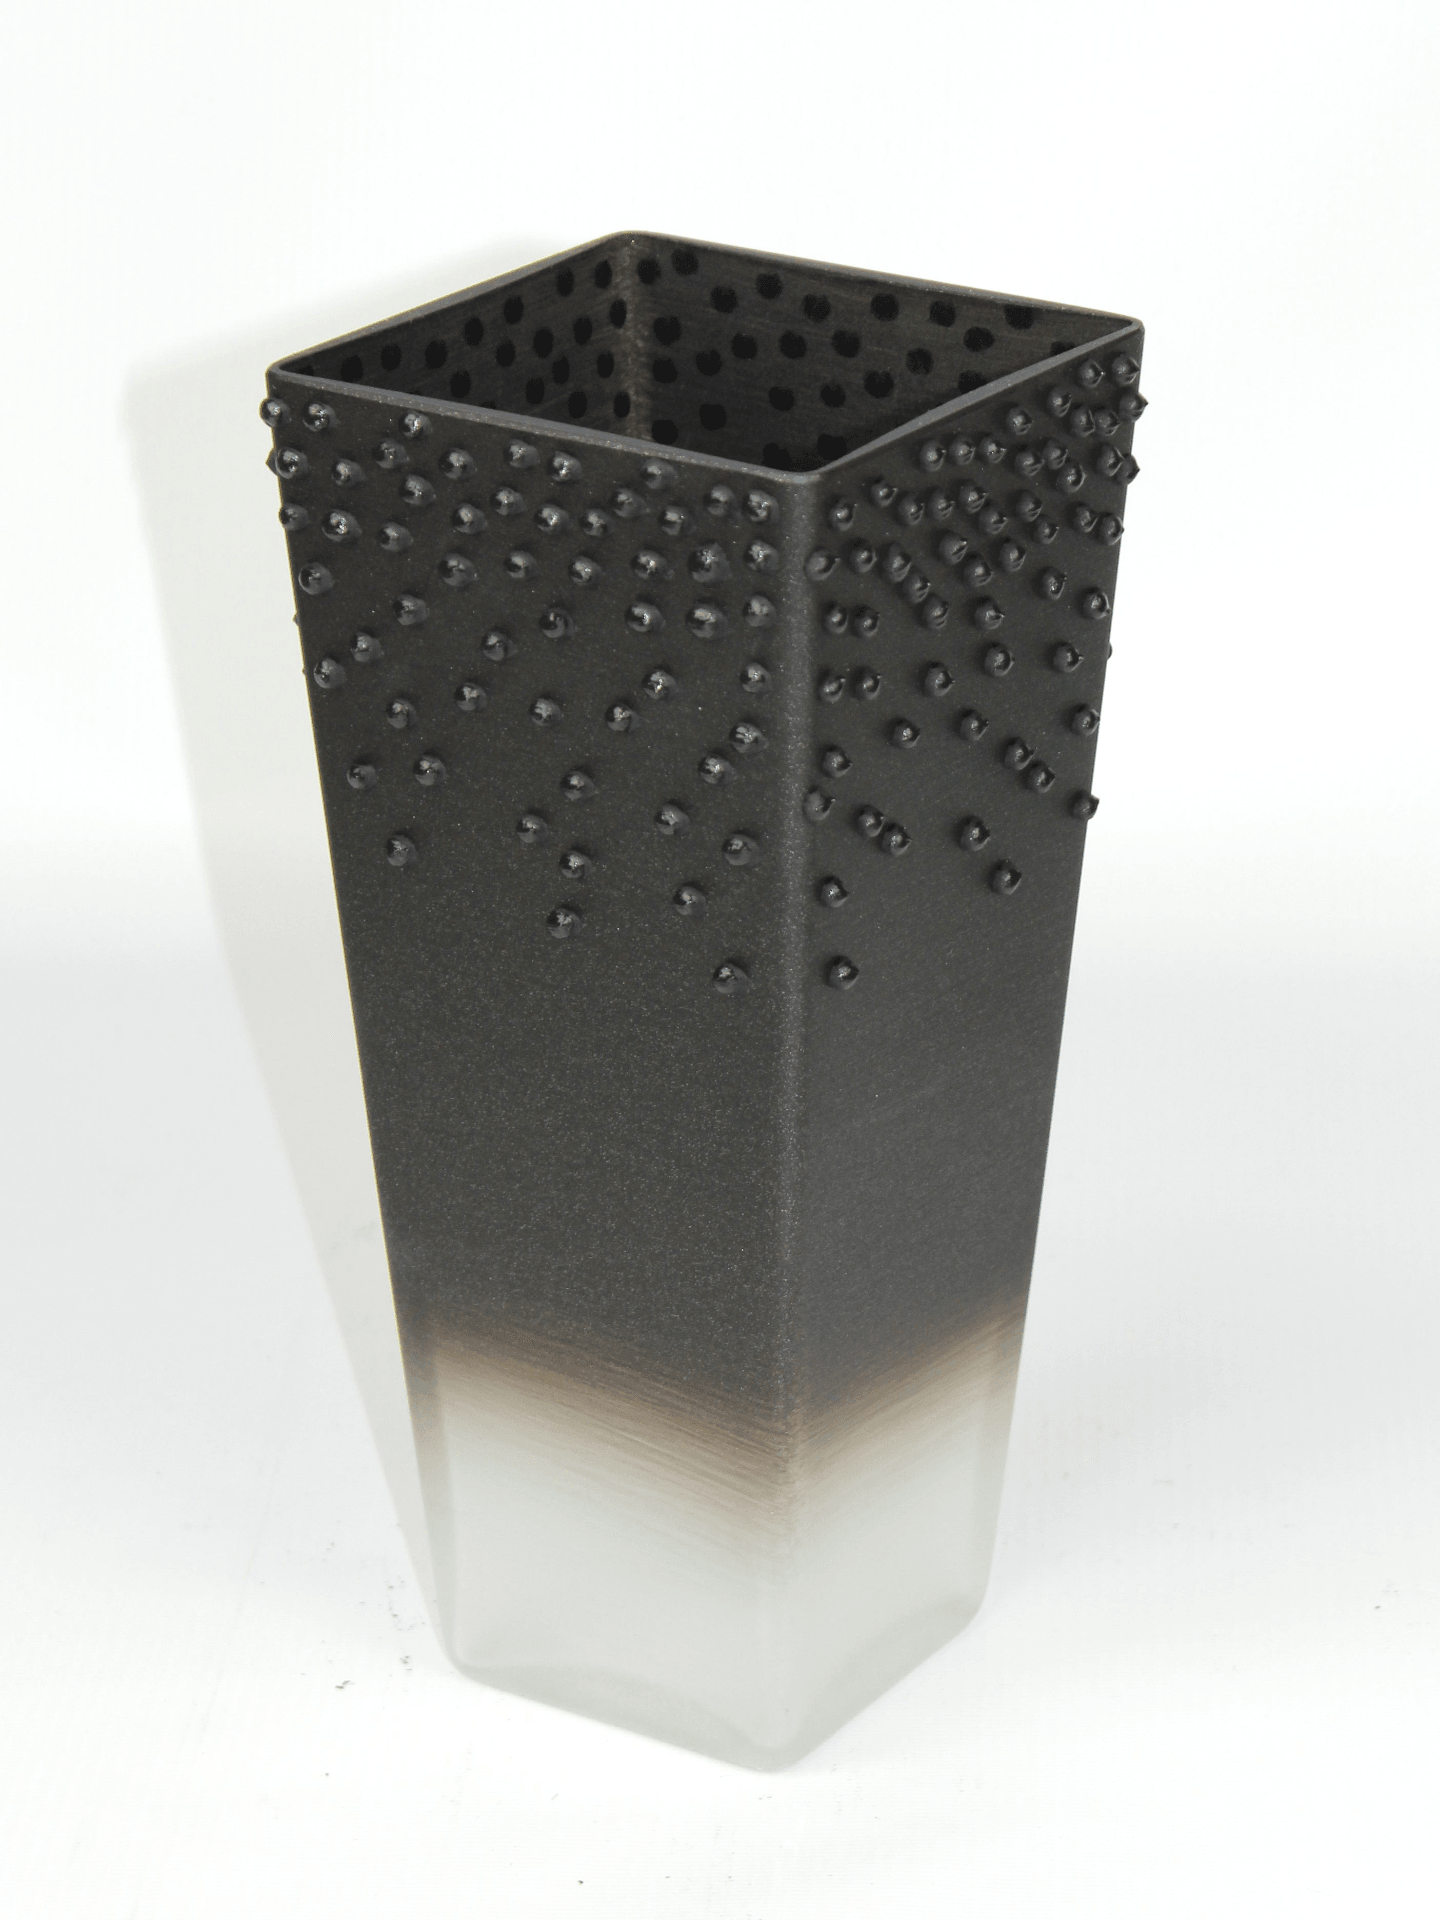 table black art decorative glass vase 7011/250/sh350.4  